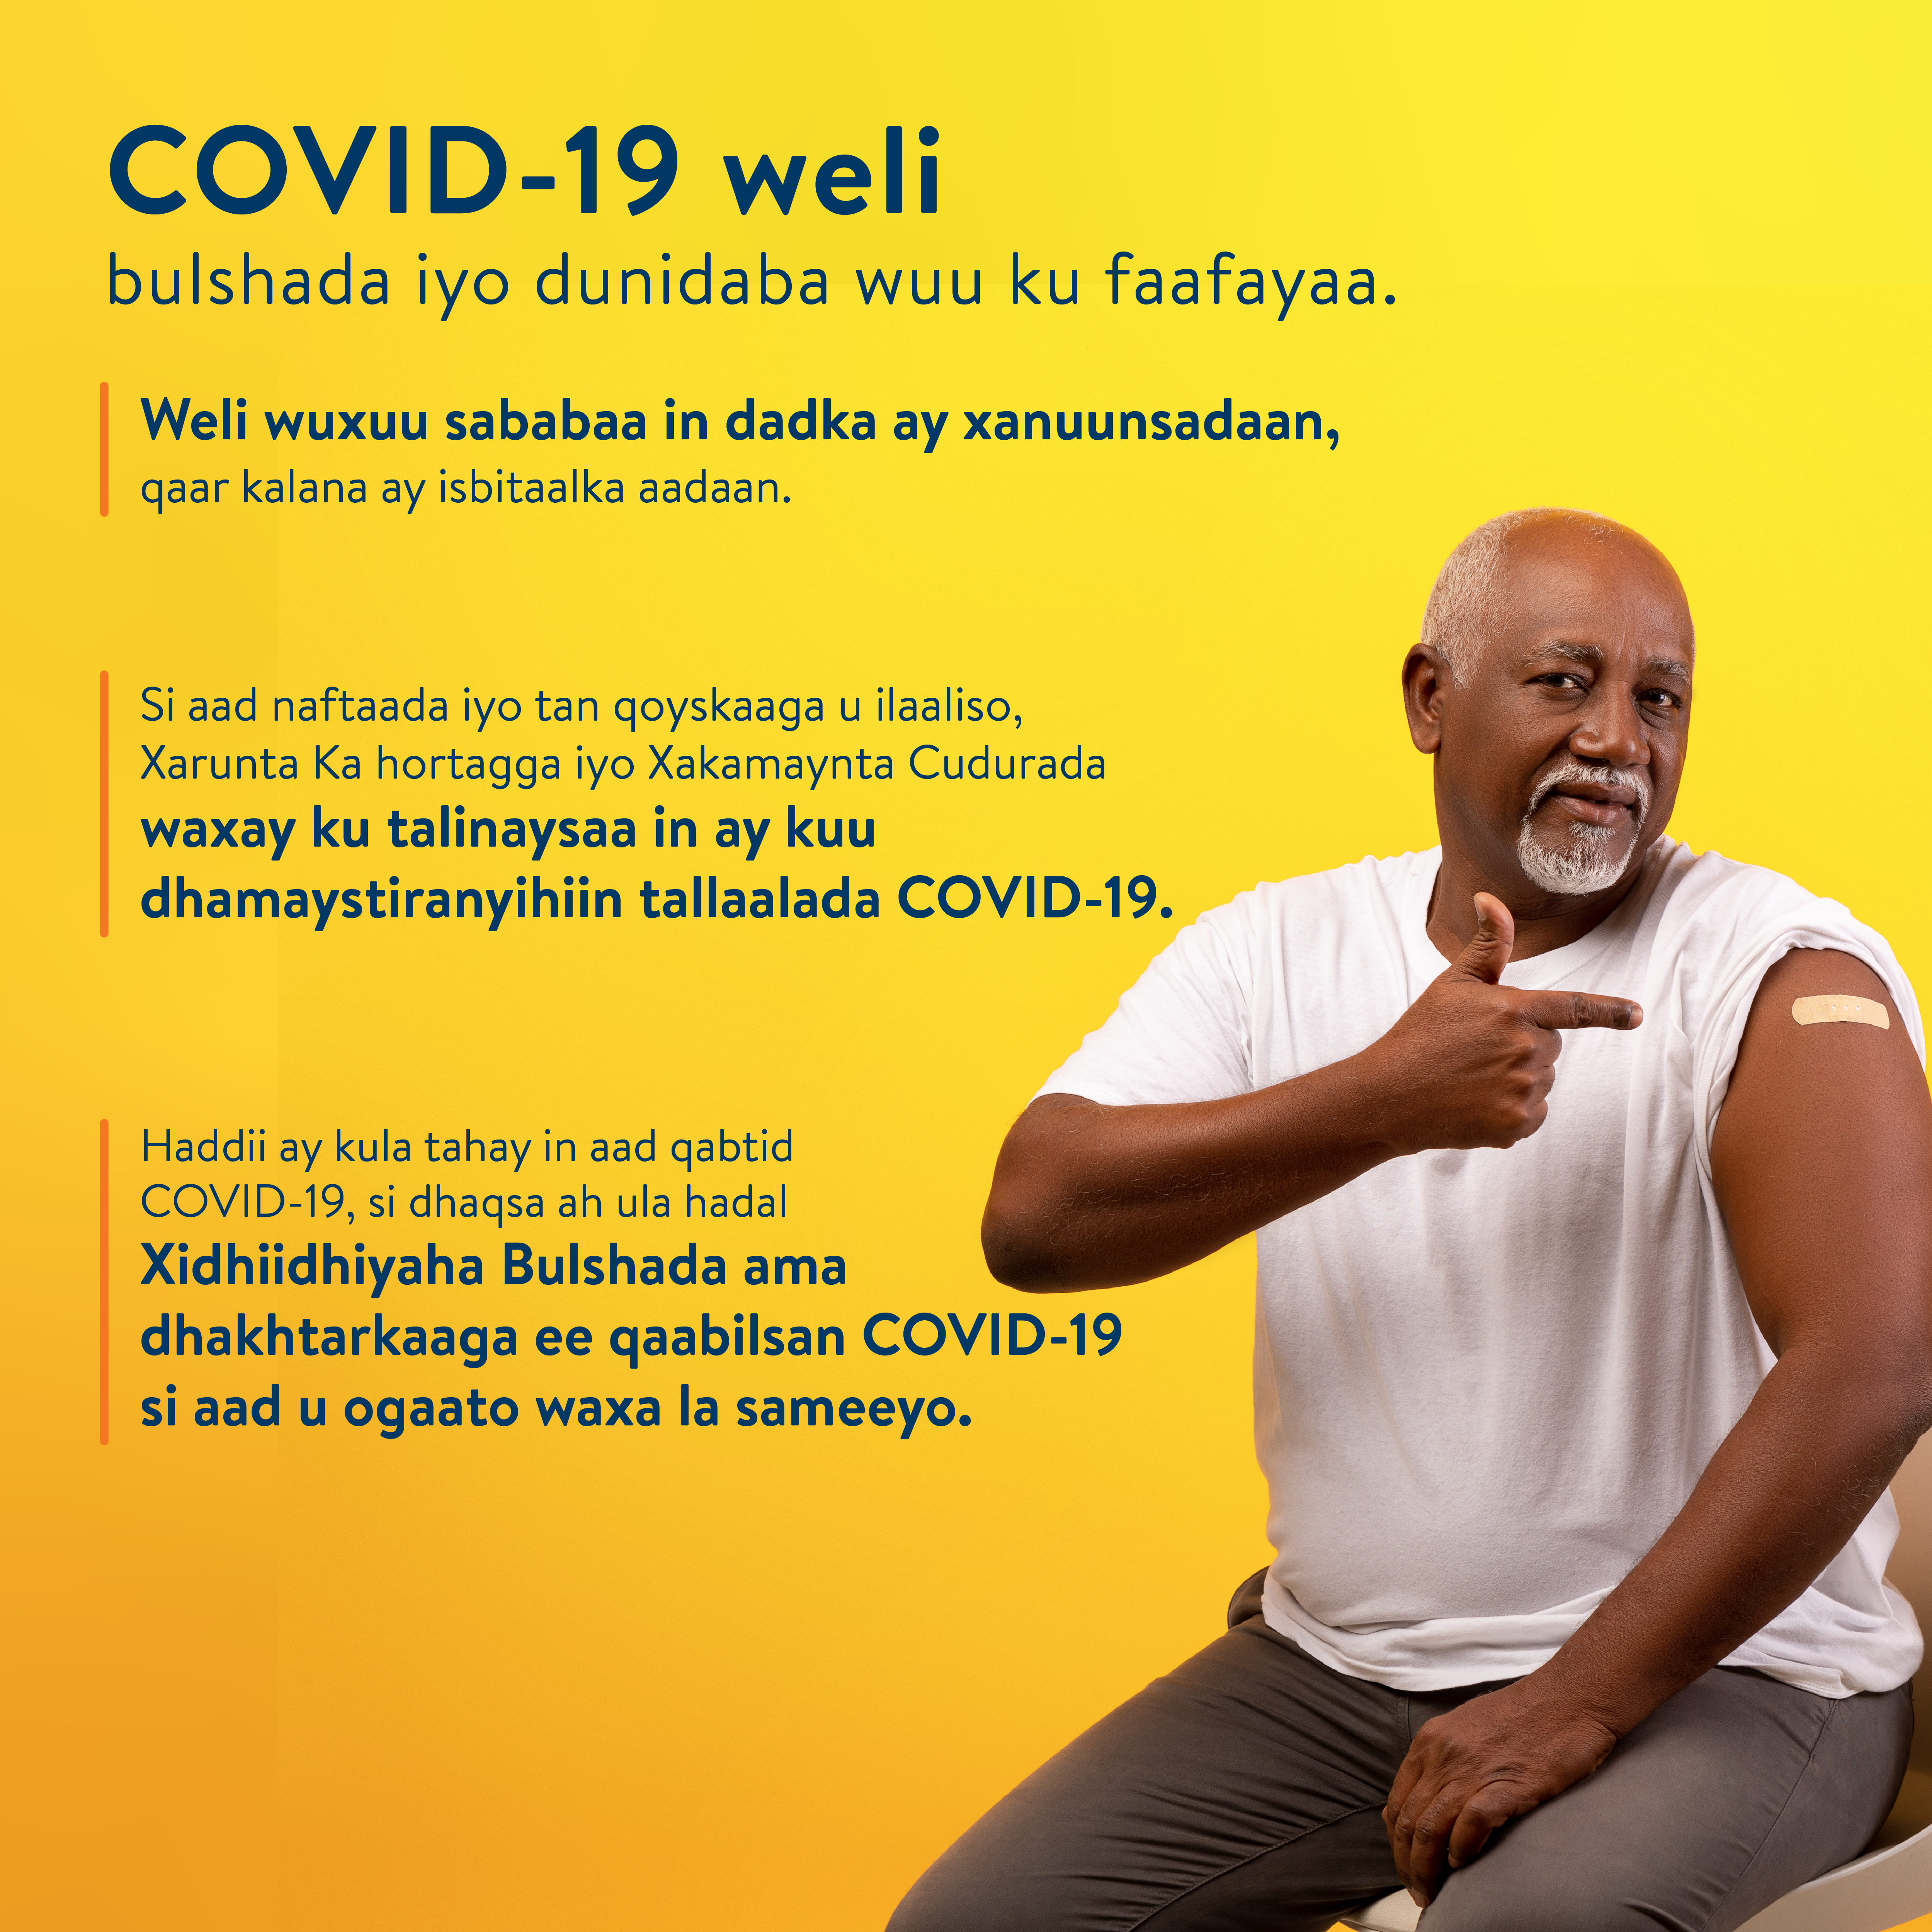 COVID-19 is still spreading in Somali, image for social media